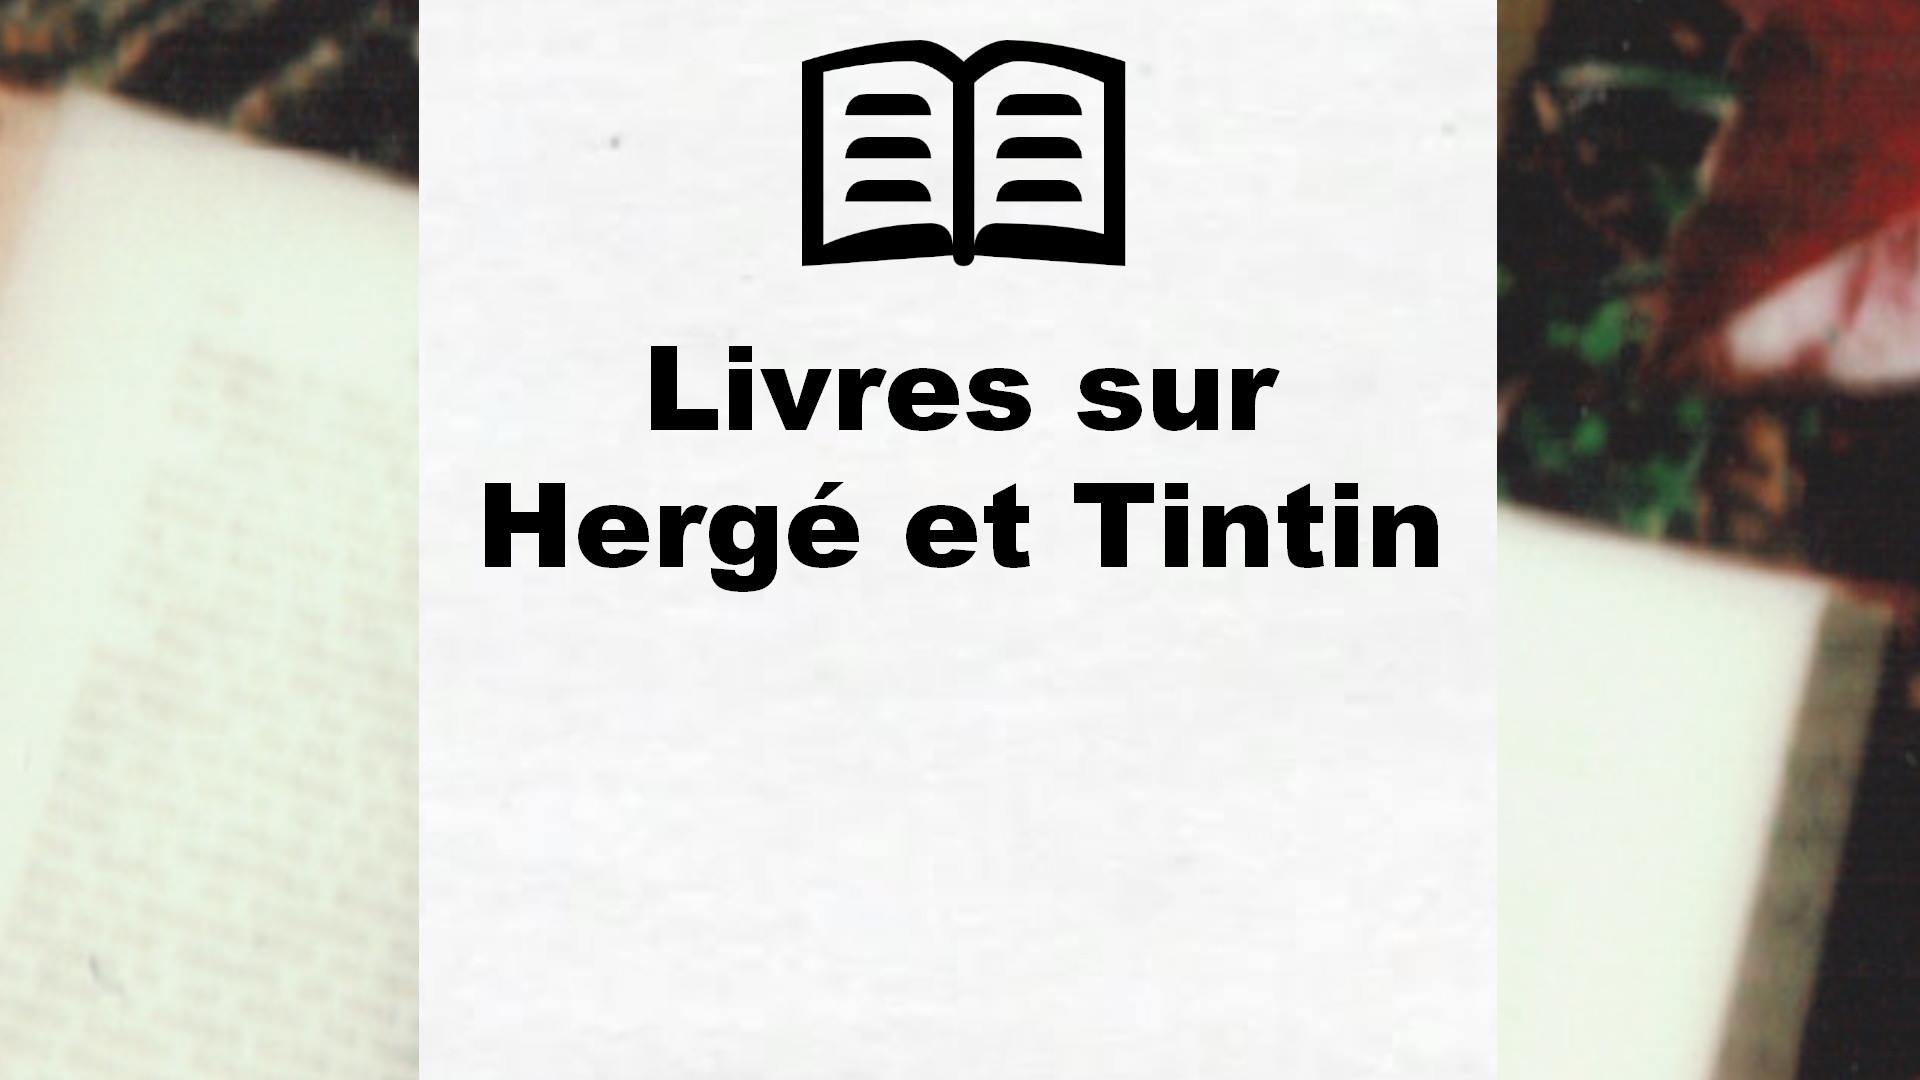 Livres sur Hergé et Tintin